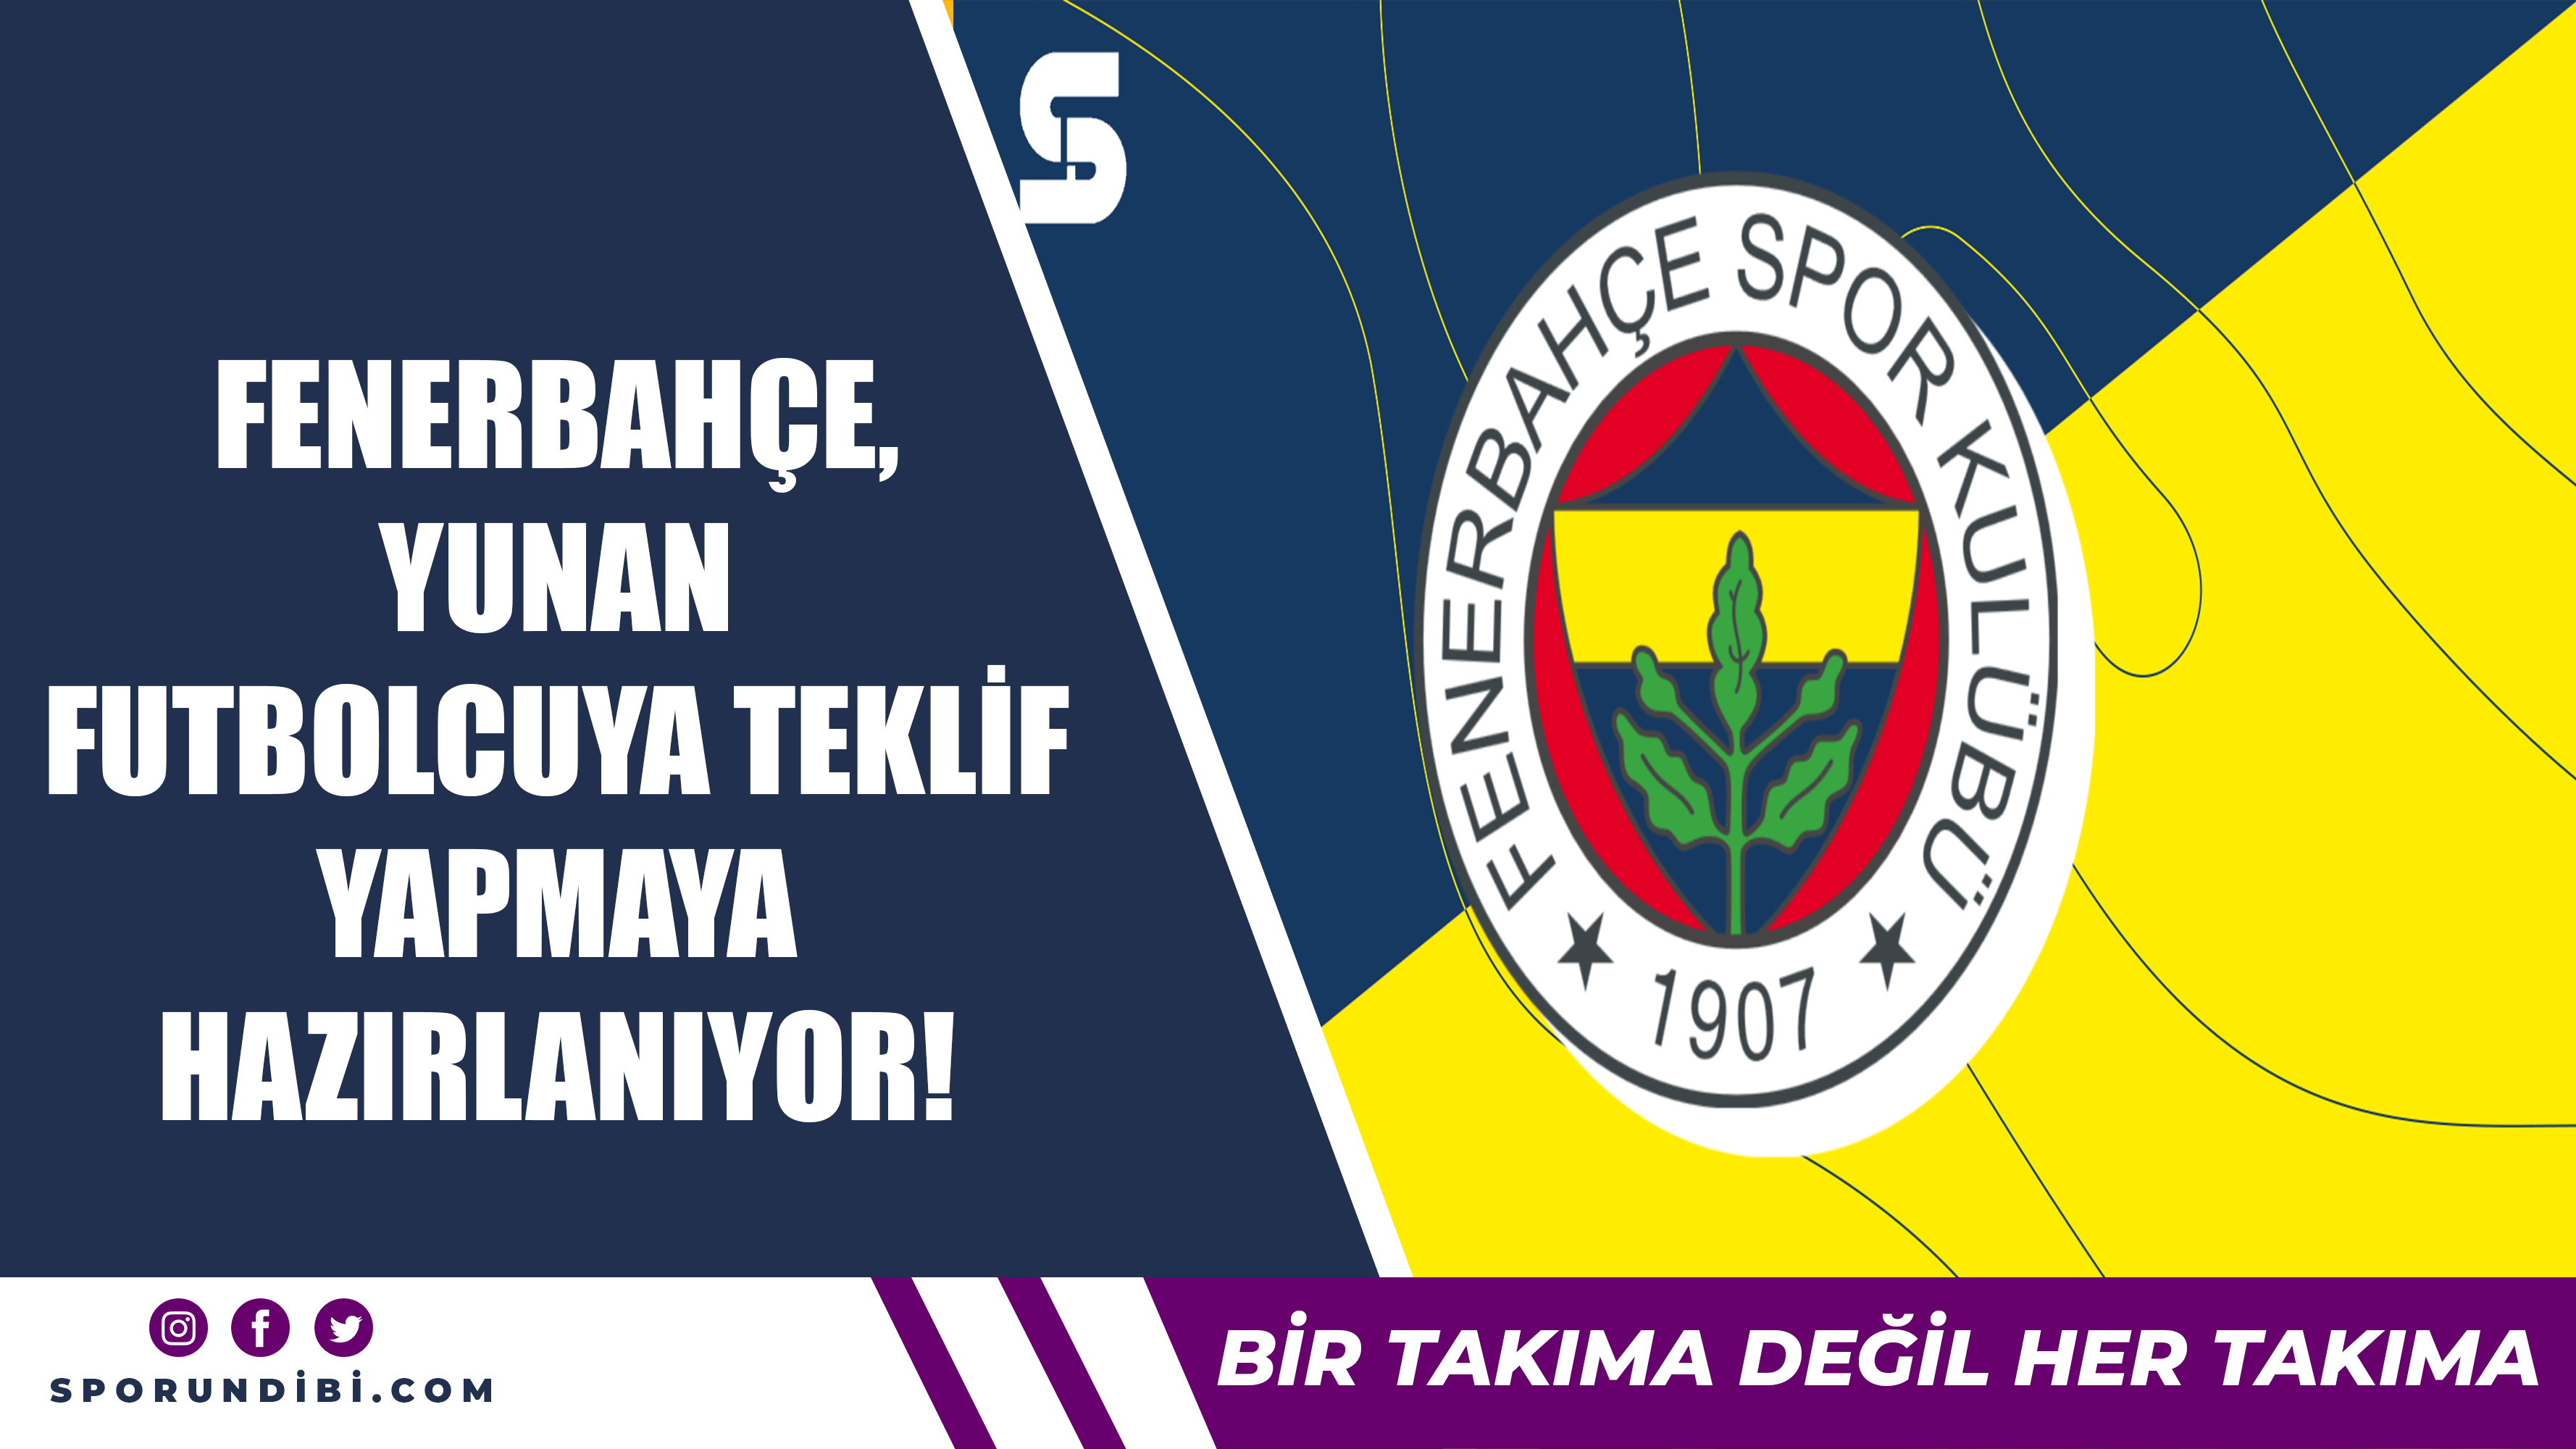 Fenerbahçe, Yunan futbolcuya teklif yapmaya hazırlanıyor!